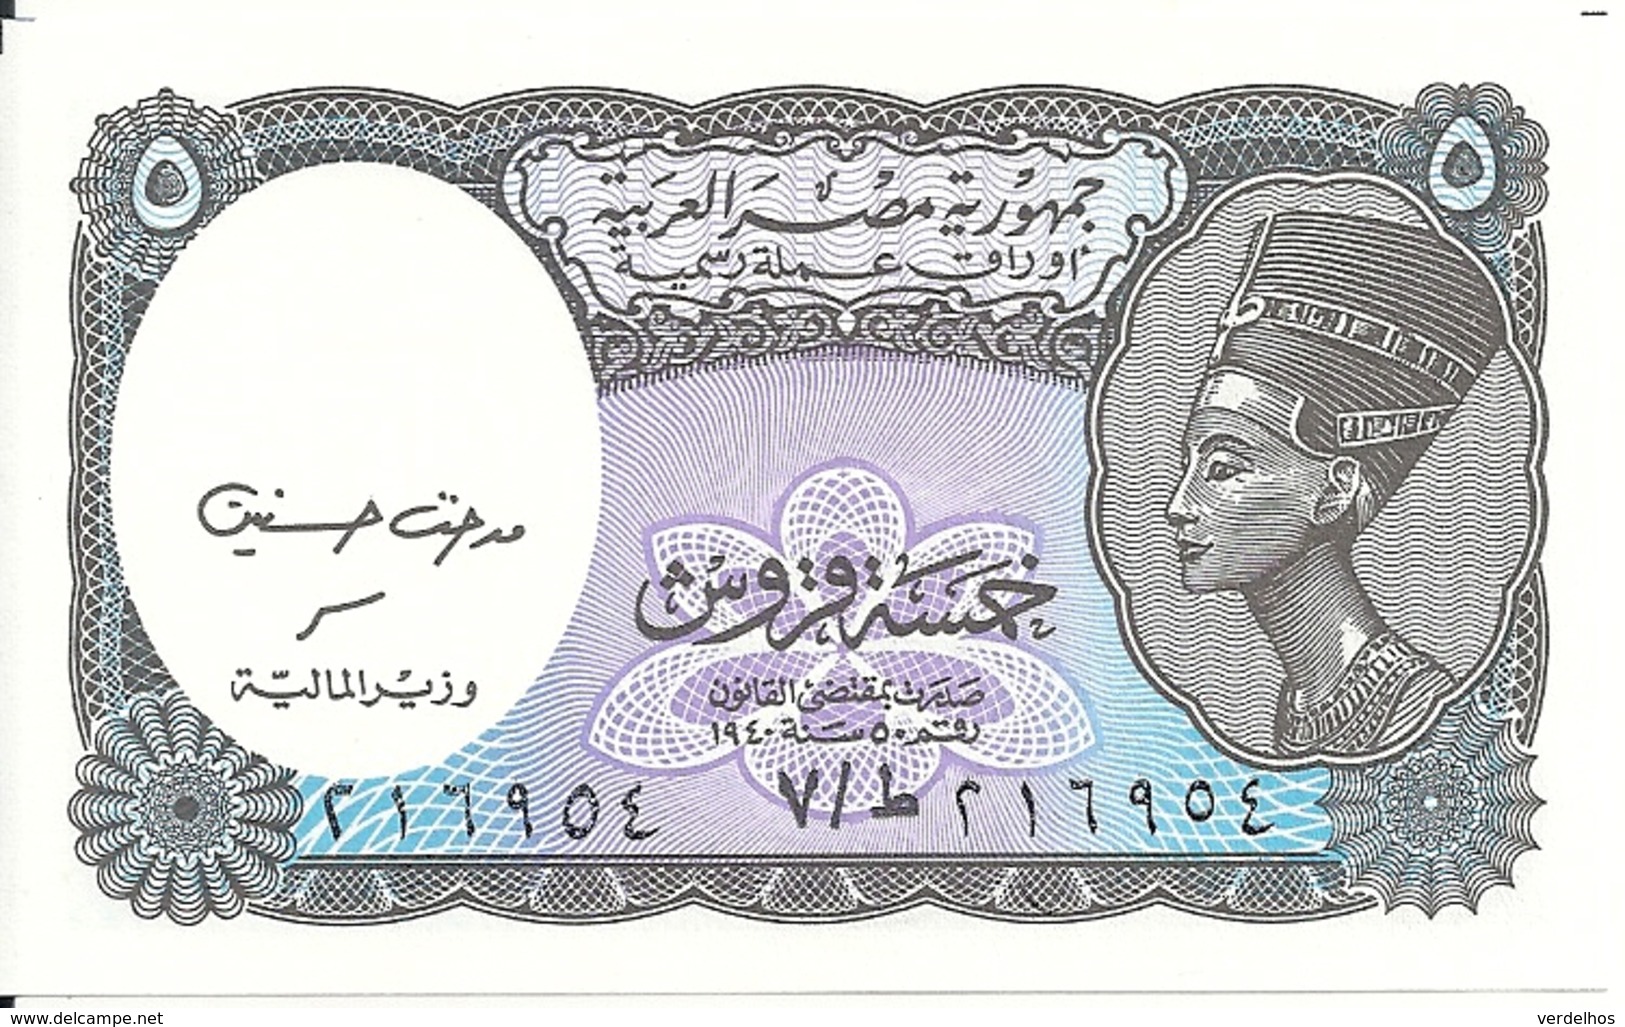 EGYPTE 5 PIASTRES 1999 UNC P 188 B - Egypte